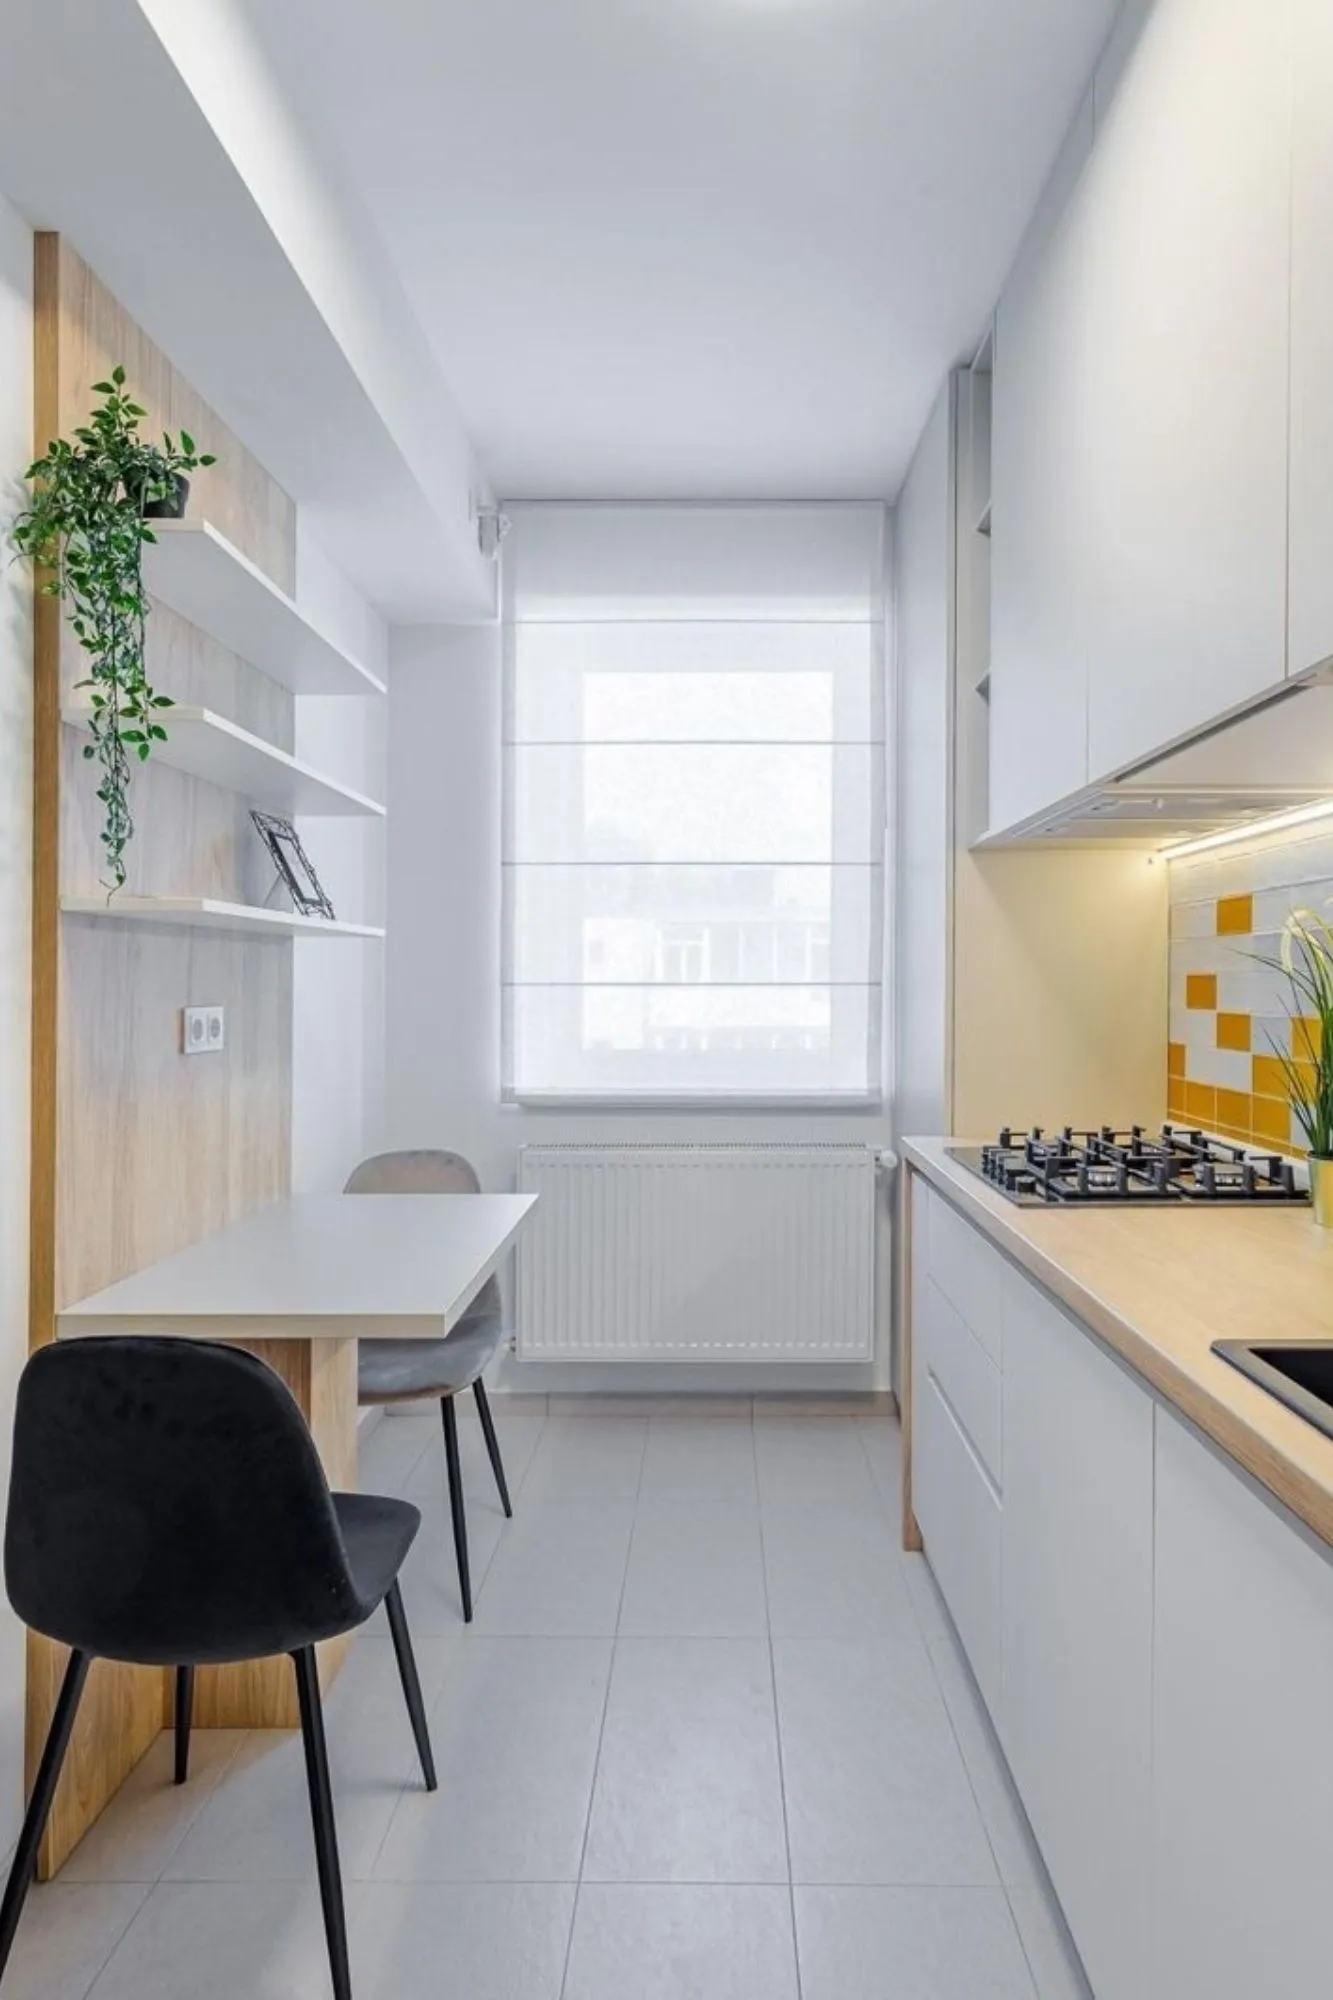 El diseño implica arriesgar, y usar LED en la cocina es una apuesta  elegante #cocinas …